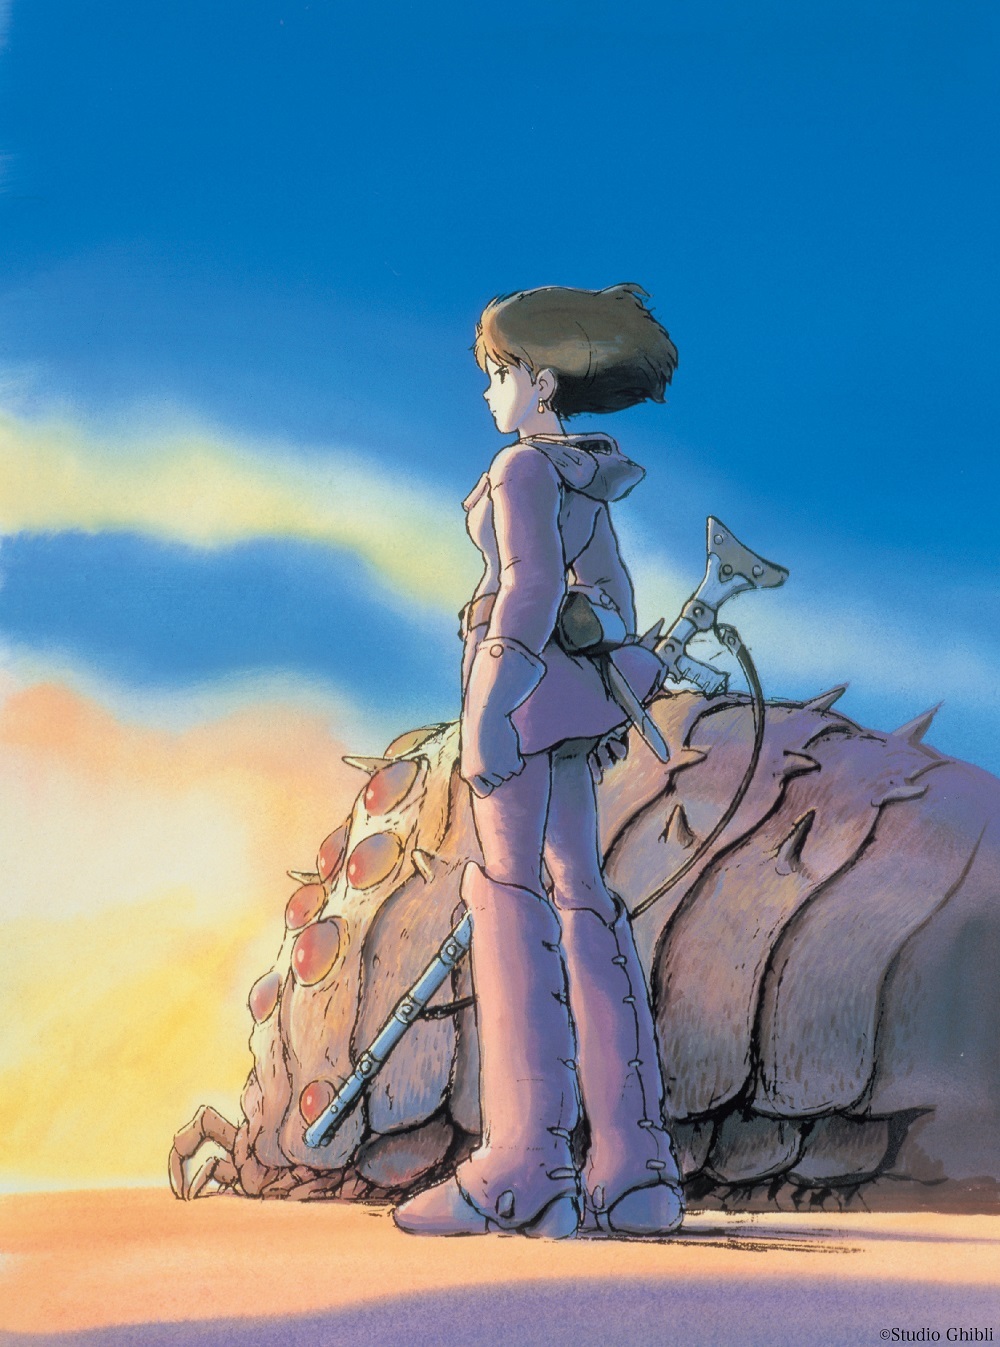 「風の谷のナウシカ」 (C)Studio Ghibli